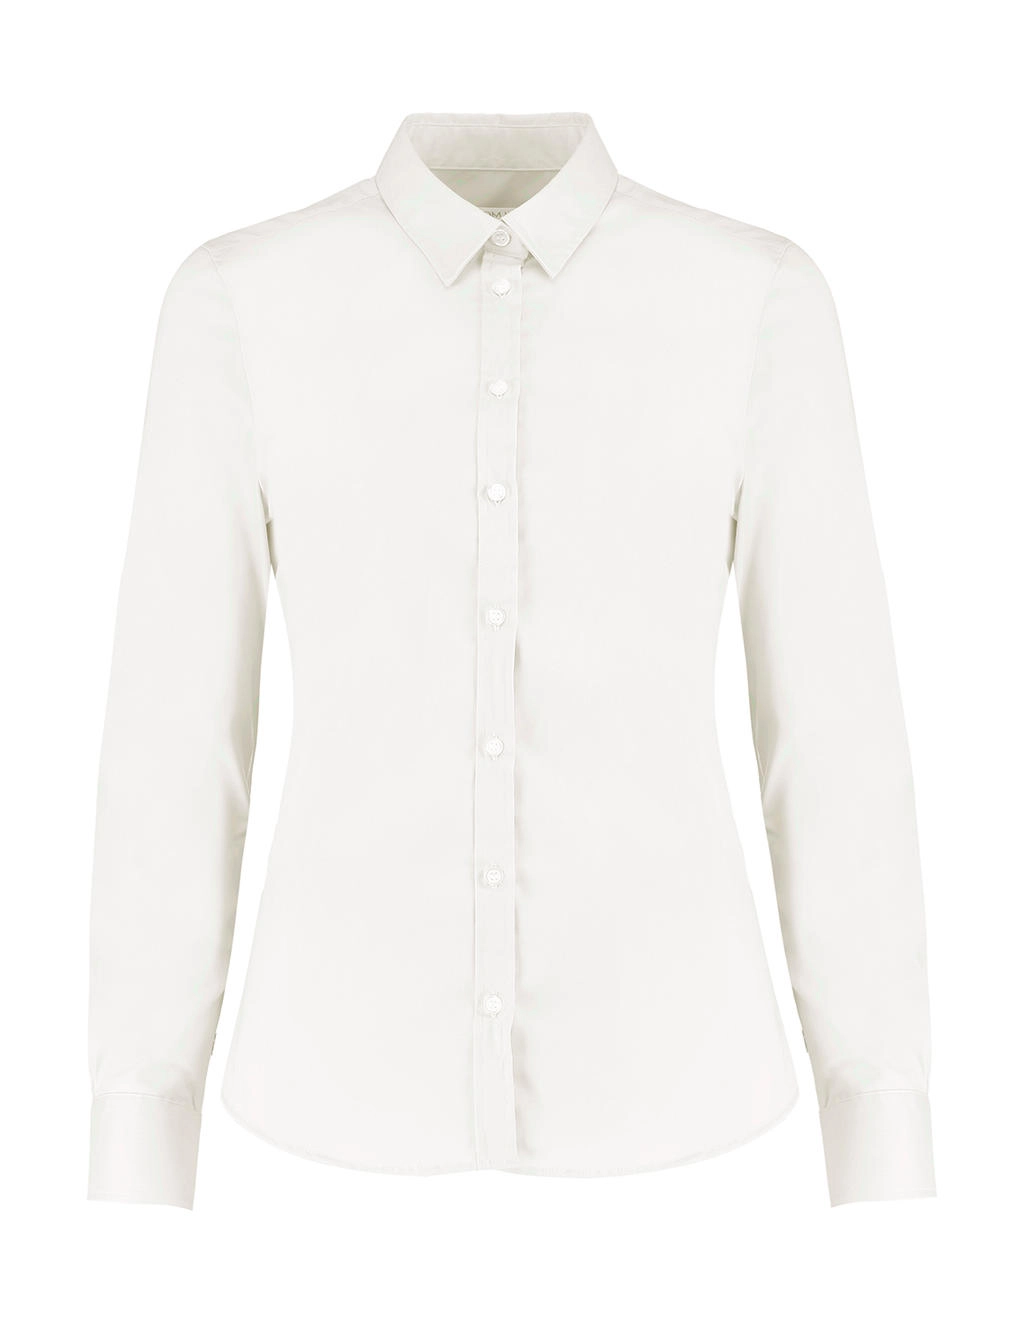 Women`s Tailored Fit Stretch Oxford Shirt LS zum Besticken und Bedrucken in der Farbe White mit Ihren Logo, Schriftzug oder Motiv.